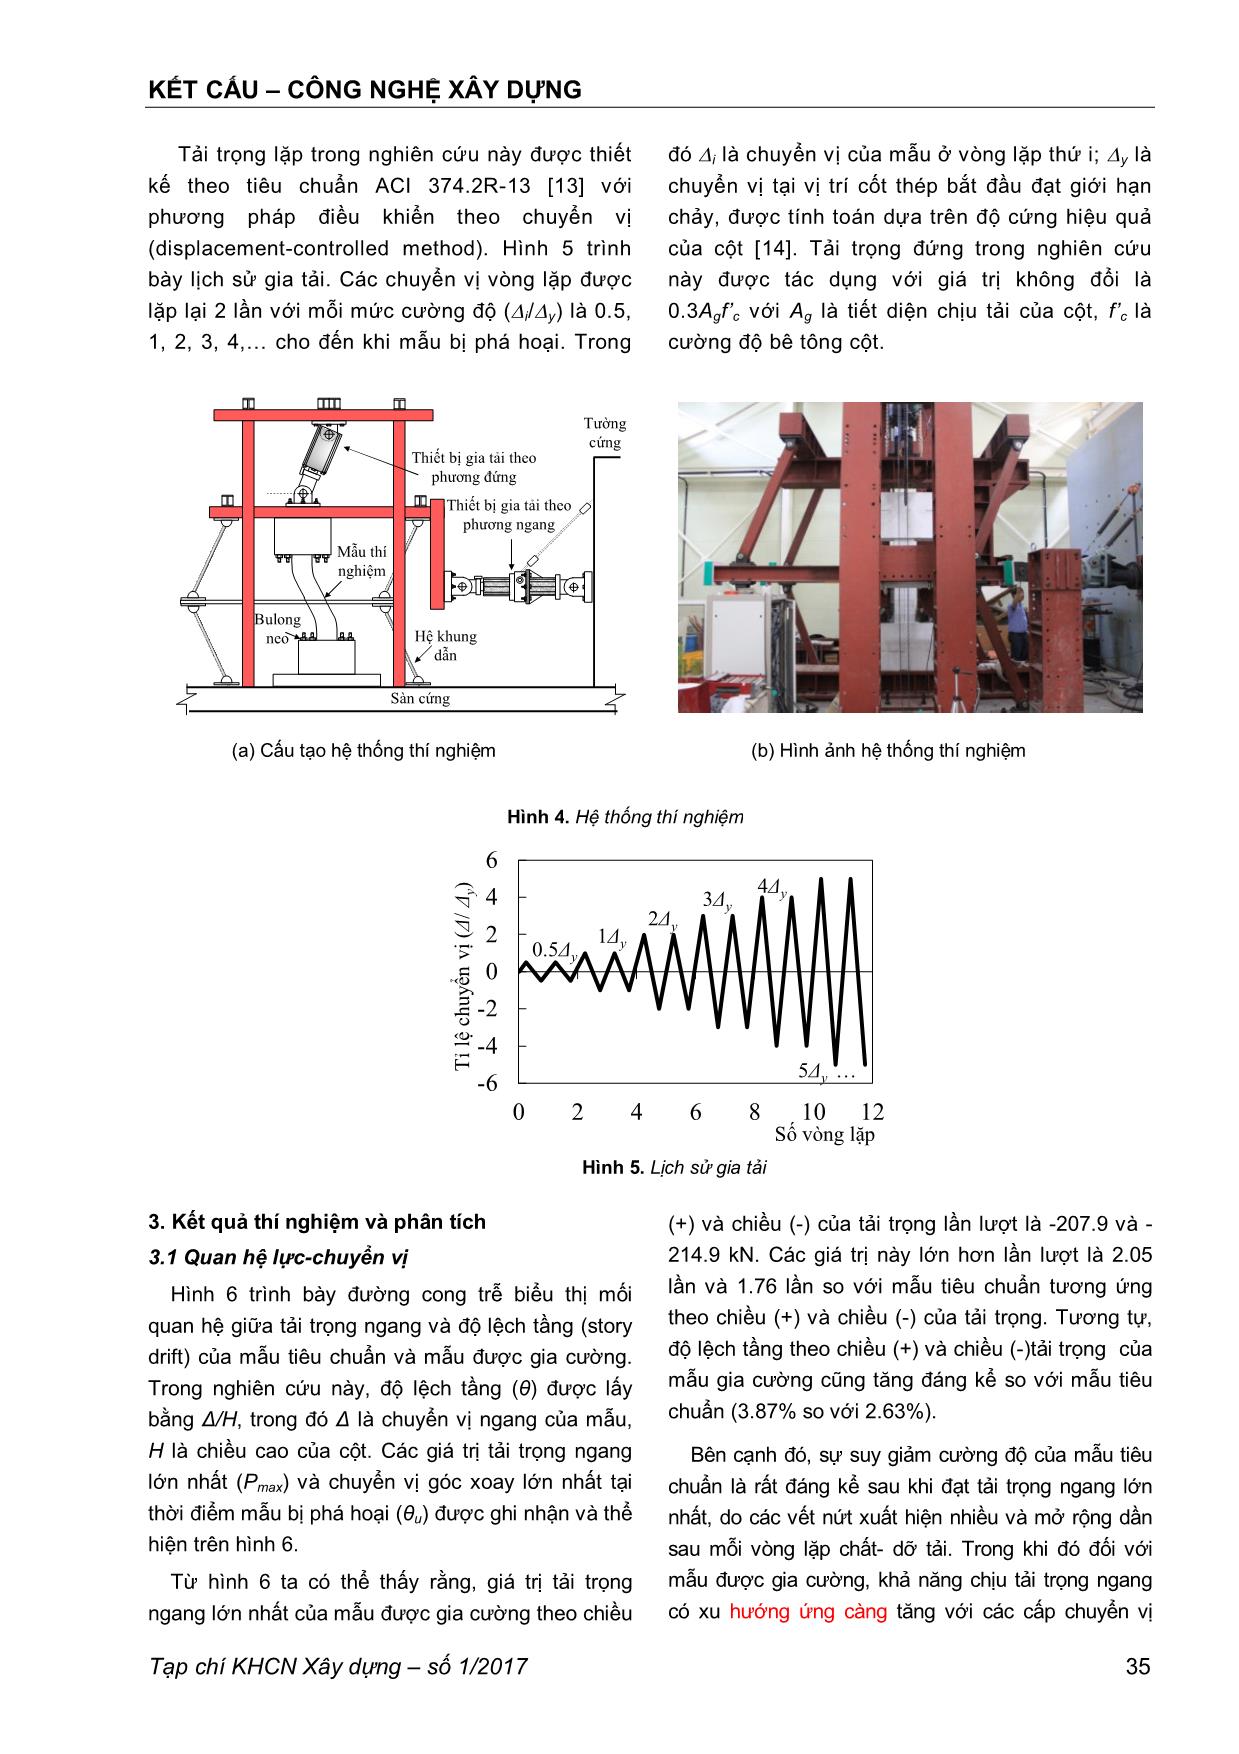 Nghiên cứu thực nghiệm gia cường kháng chấn cho cột bê tông cốt thép sử dụng cốt sợi thép vô định hình trang 4